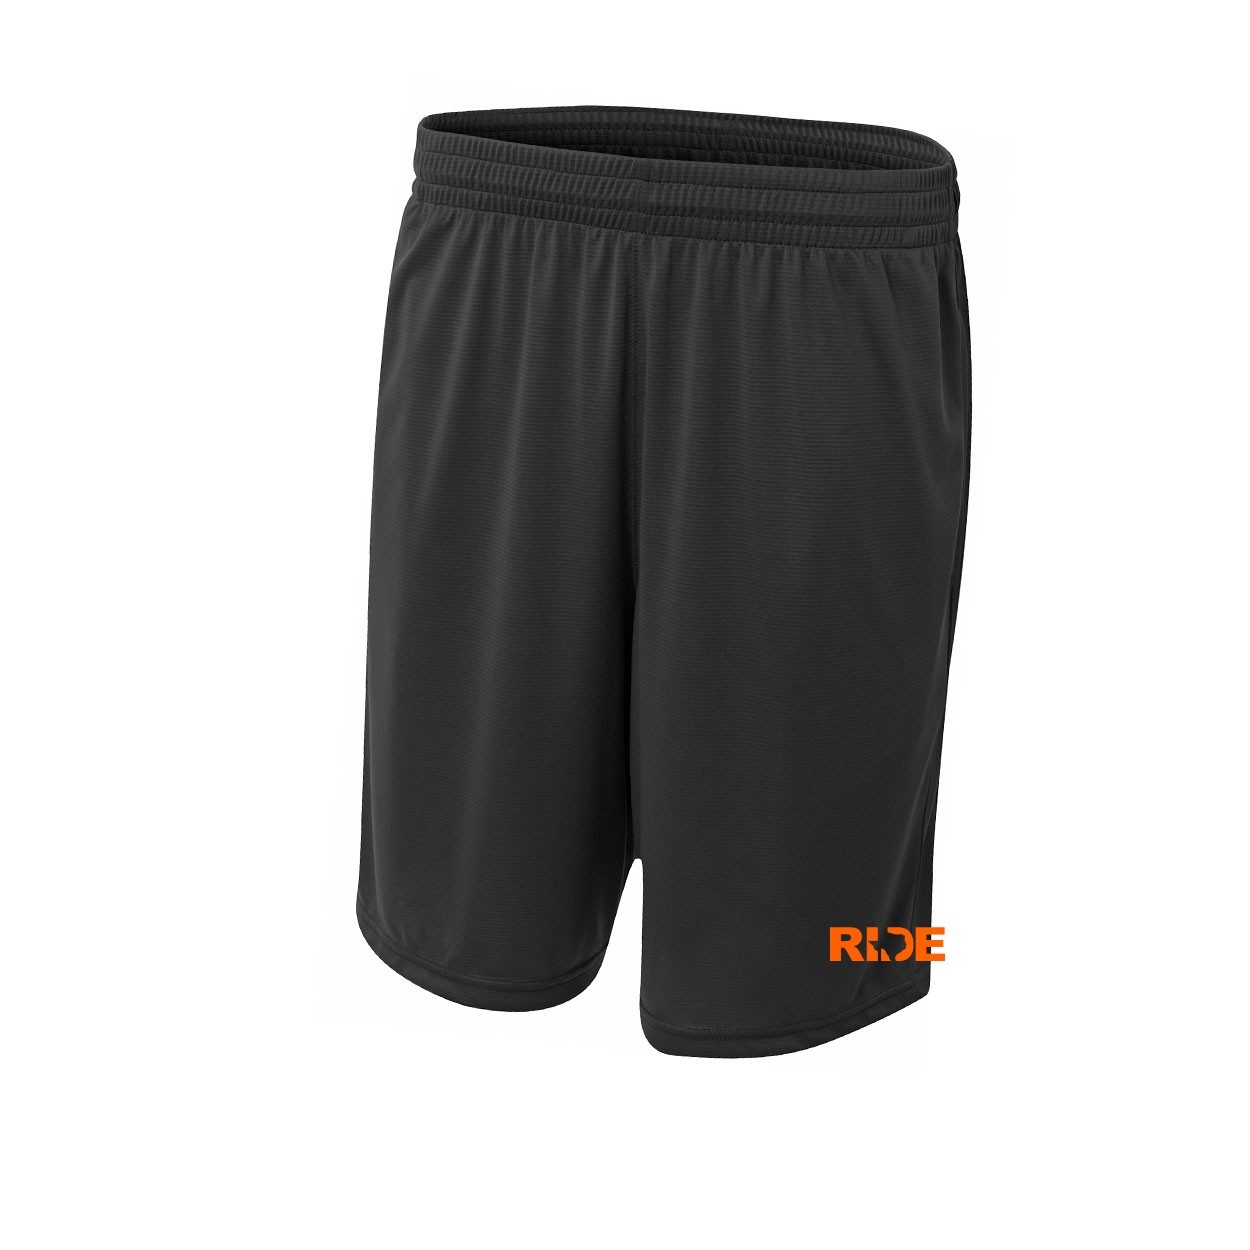 Ride Texas Classic Youth Unisex Shorts Black (Orange Logo)